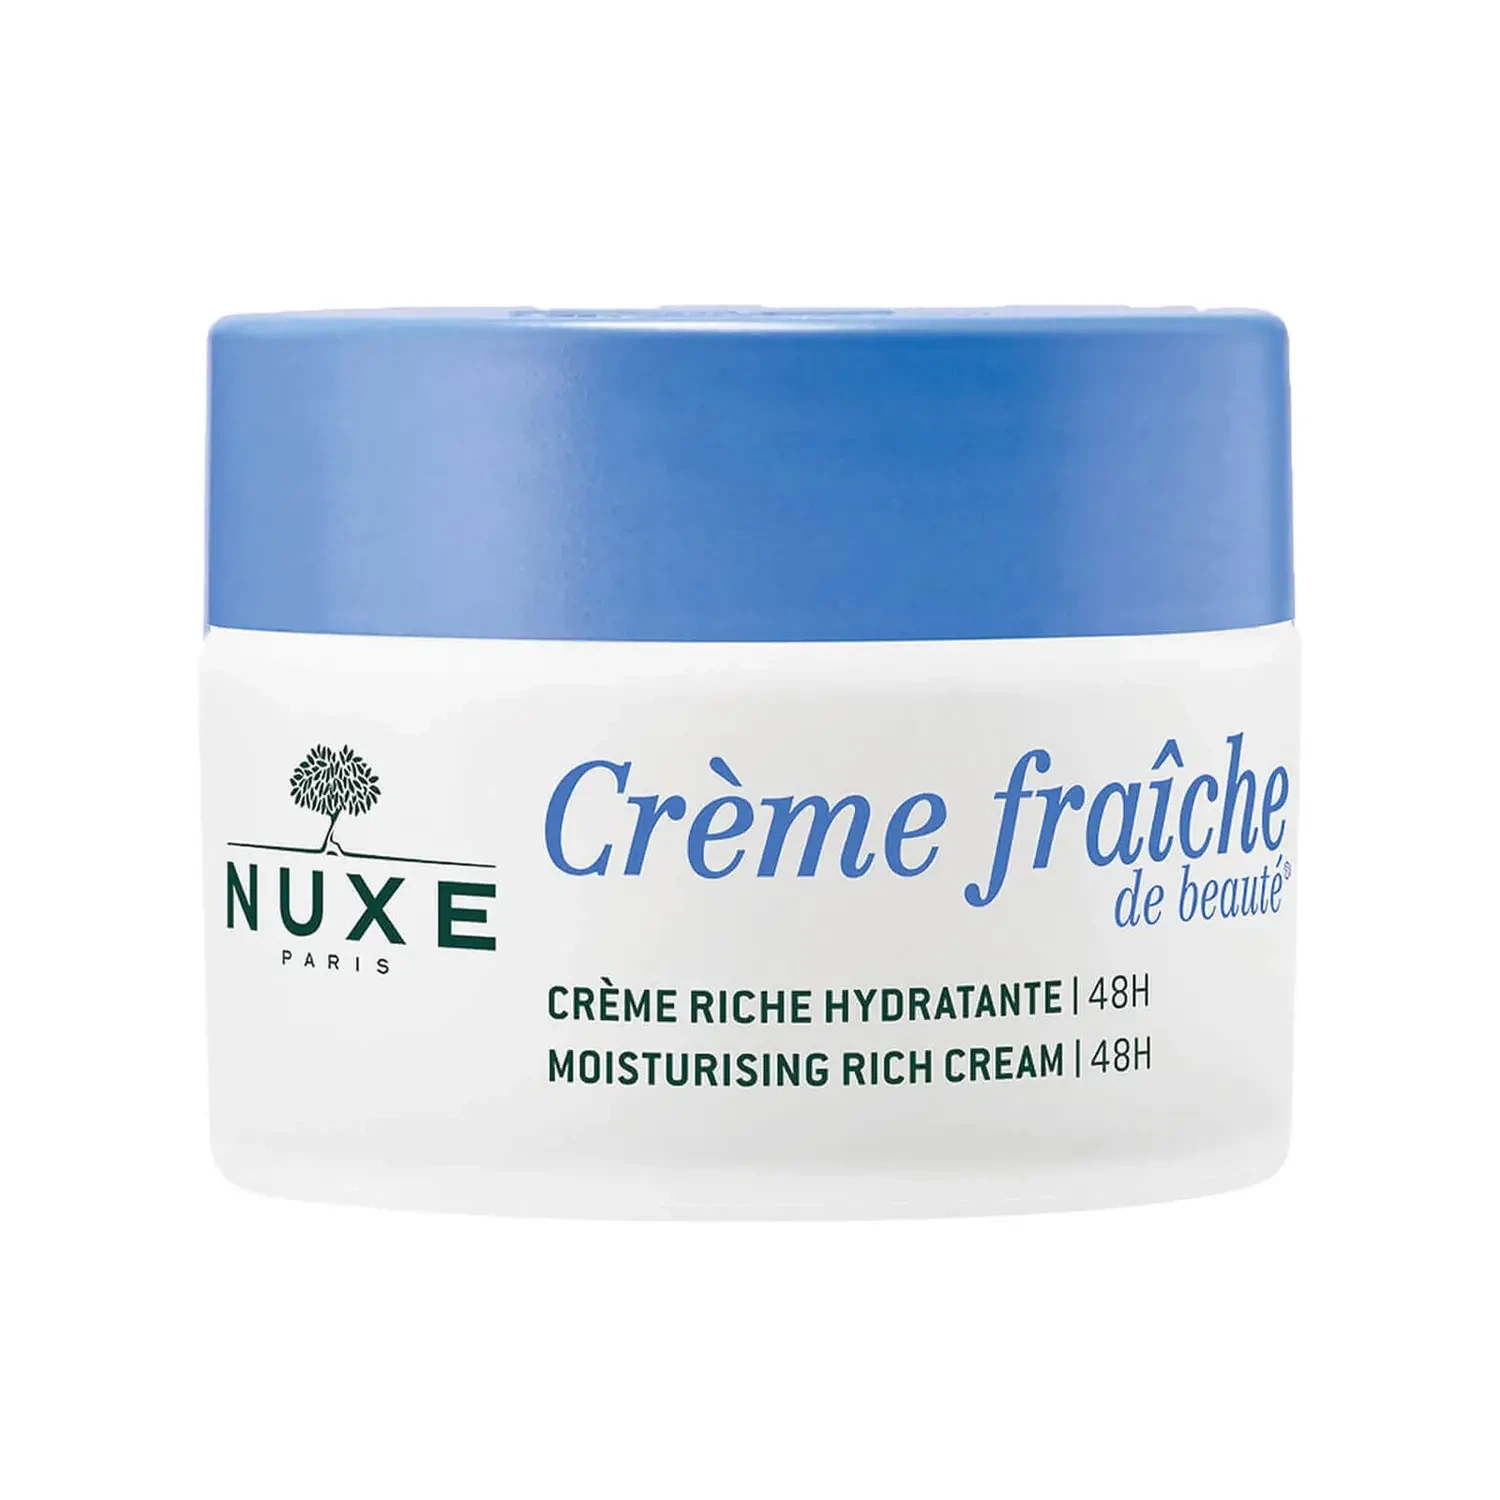 NUXE - Moisturising Cream Dry Skin 48h, Crème Fraîche de Beauté